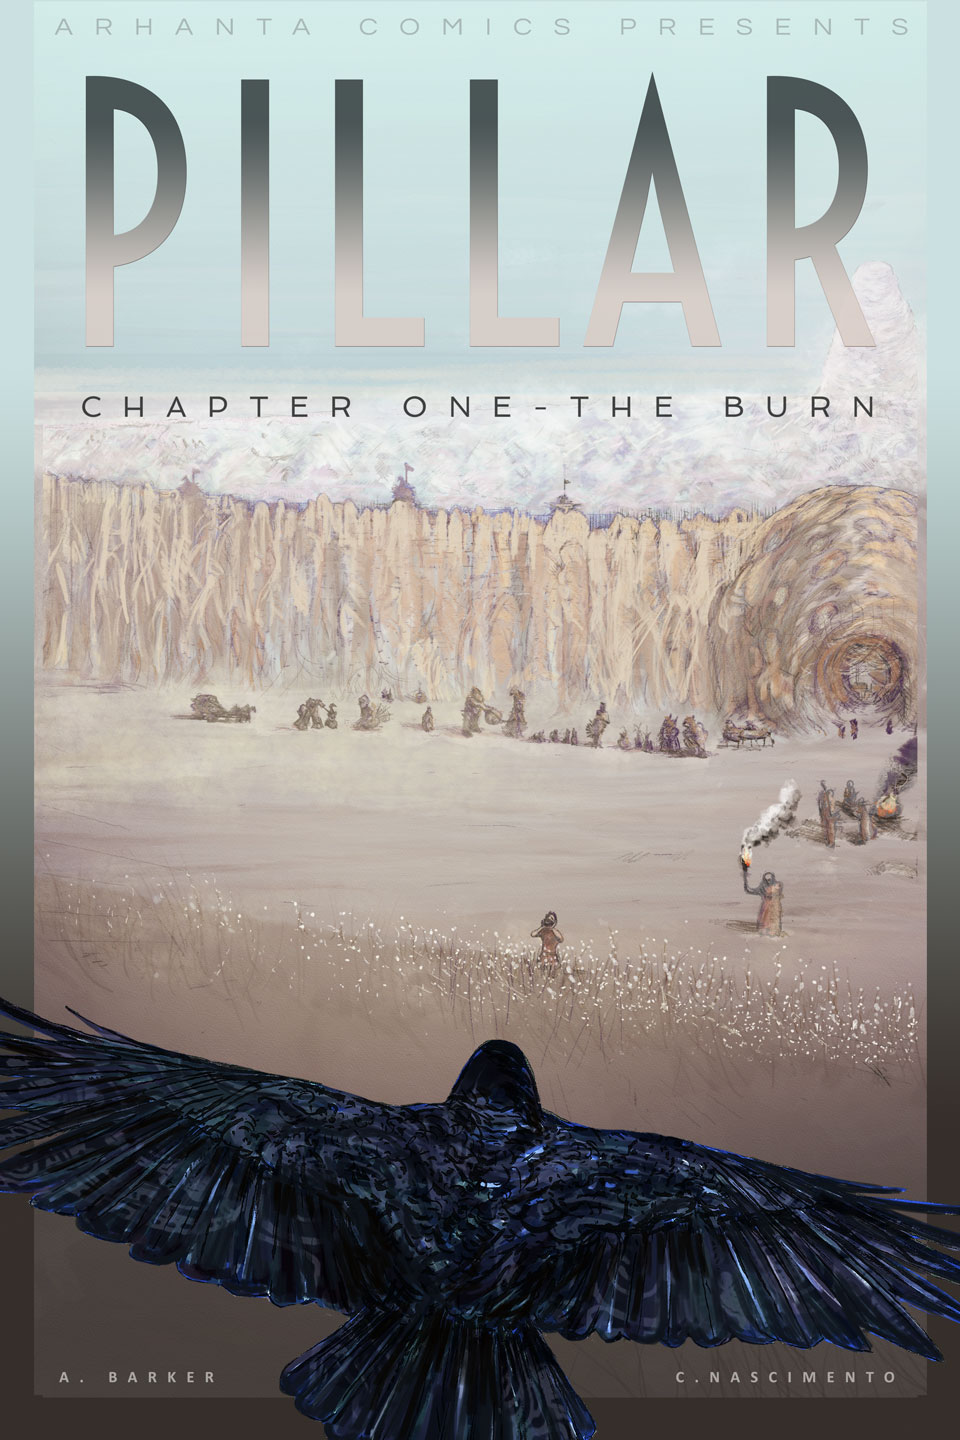 pillar chapter one